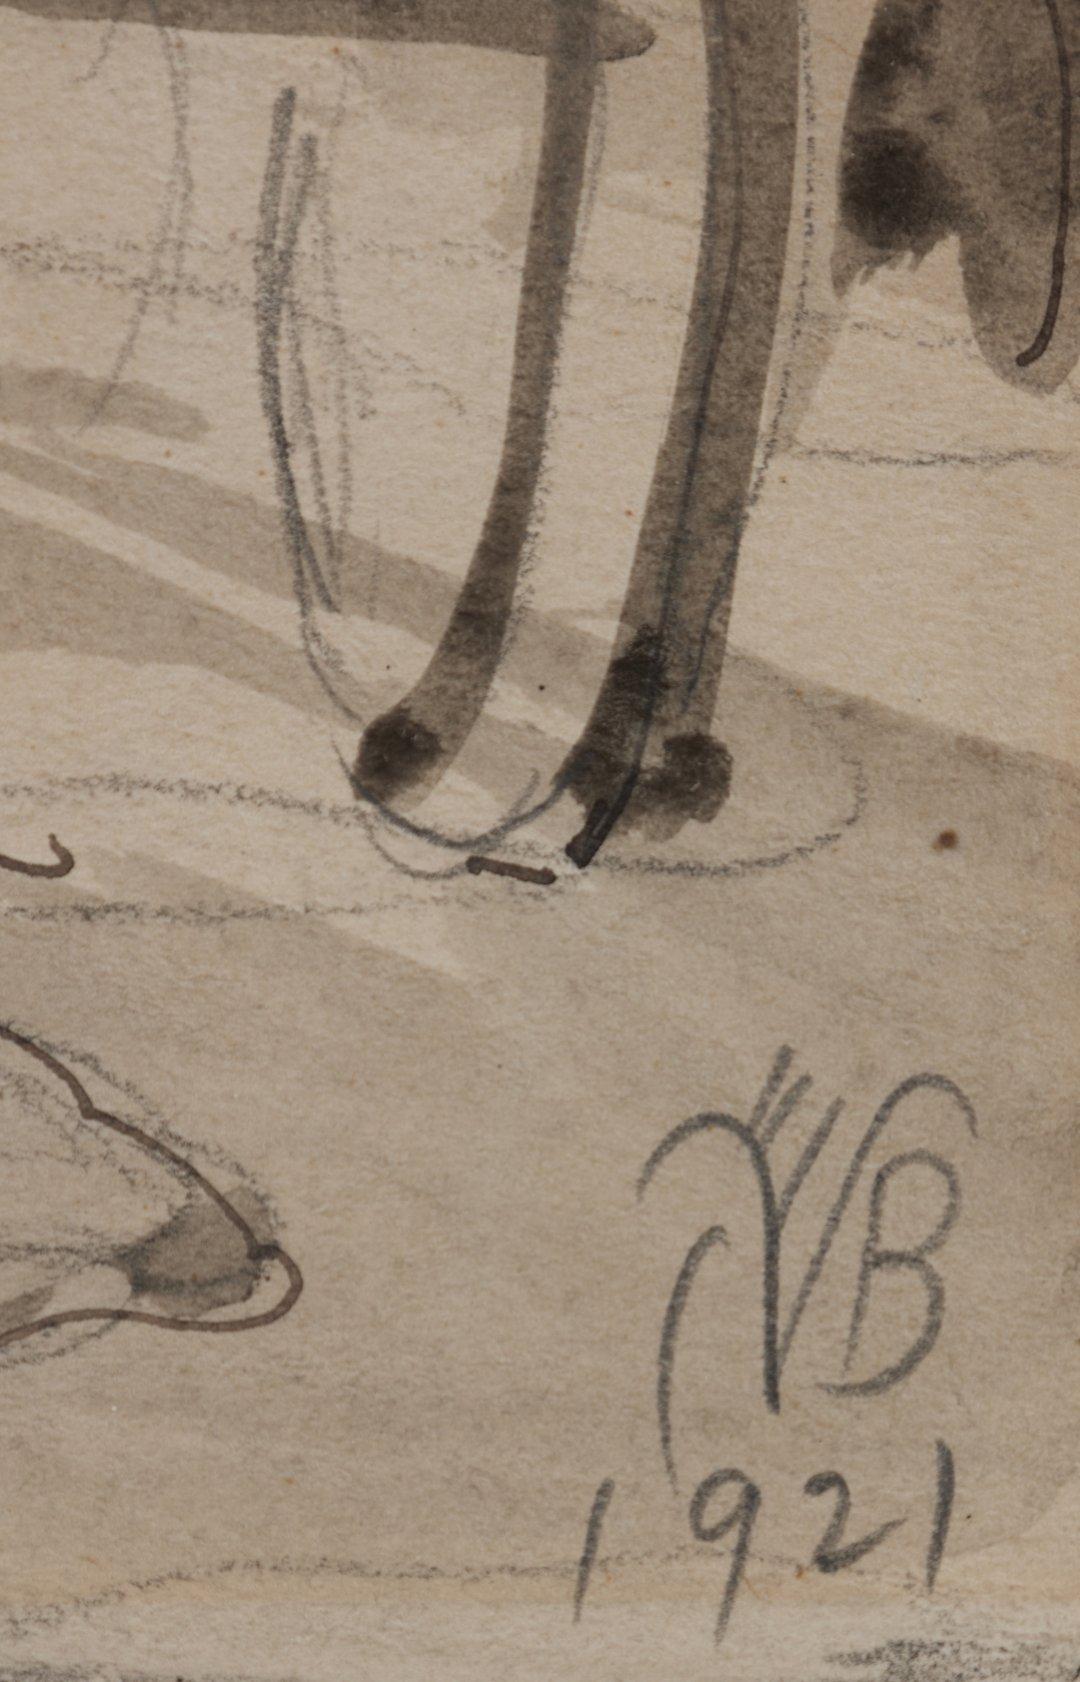 Charles Burchfield (Amerikaner, 1893-1967
Dorfszene, 1921
Tusche, Bleistift und Aquarell auf Papier
Signiert und datiert unten rechts
11 x 8,5 Zoll
17,75 x 14,75 Zoll, gerahmt

Der in Ashtabula Harbor, Ohio, geborene Charles Burchfield wurde als